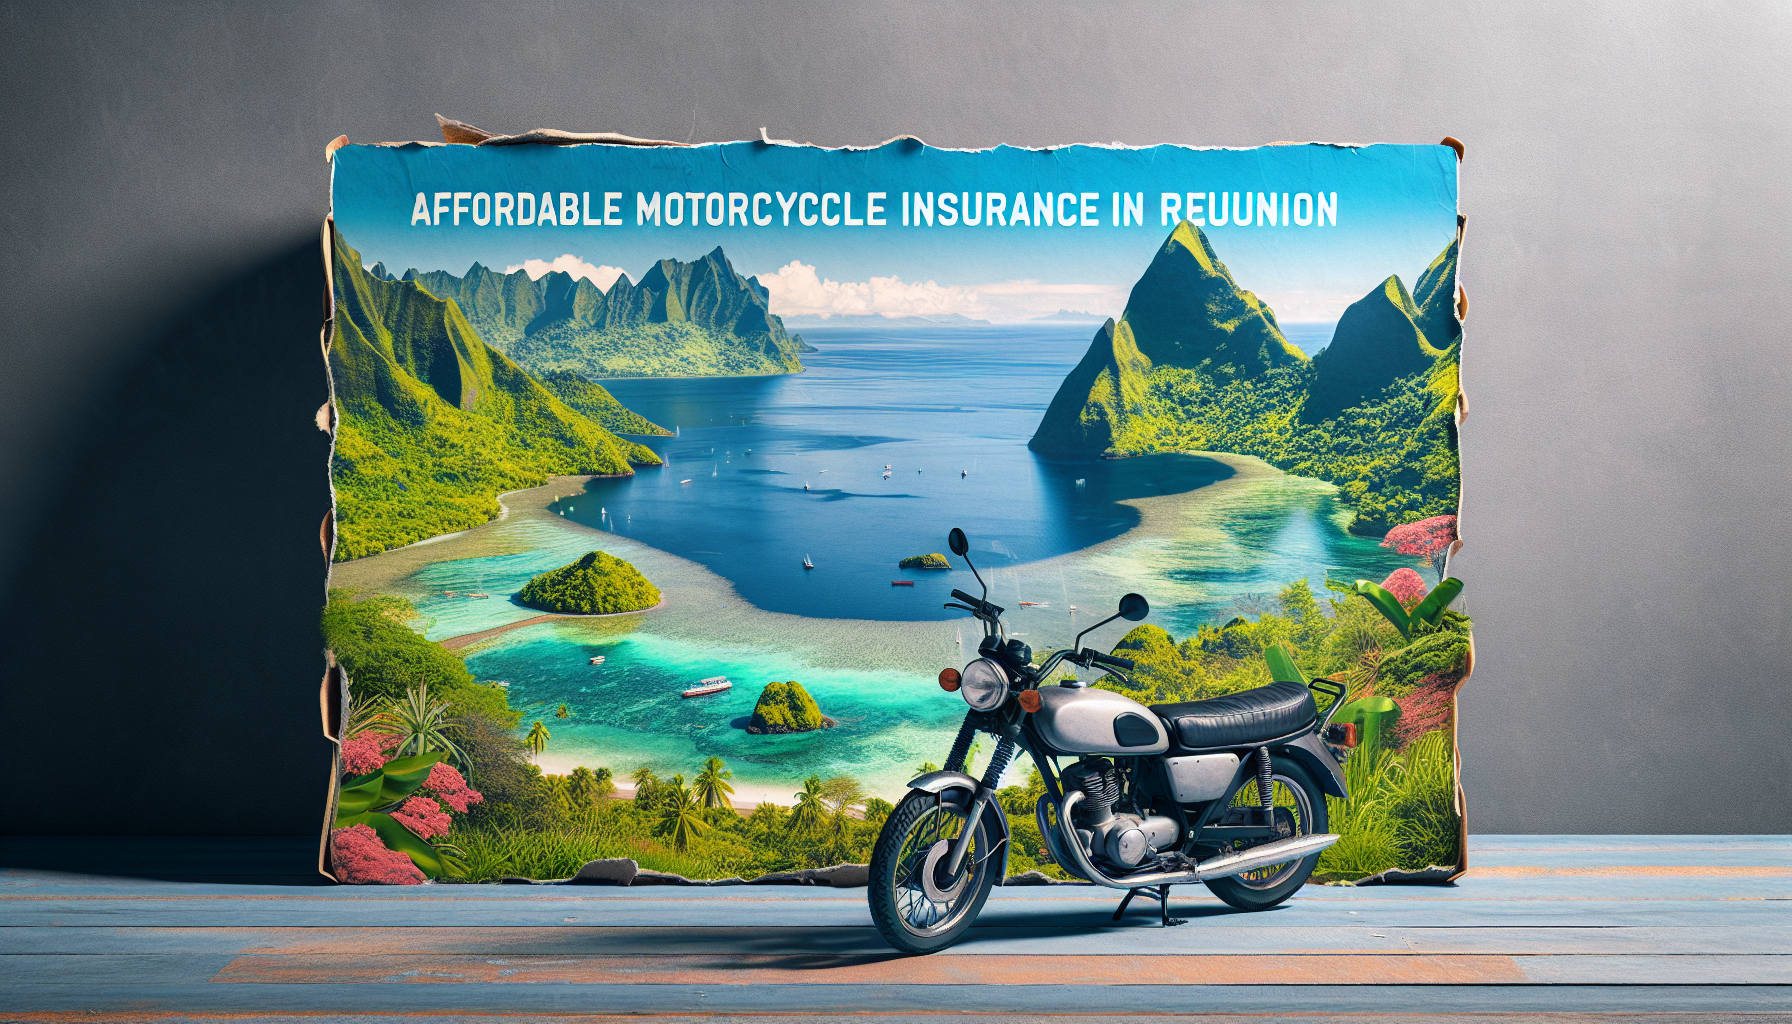 assurance moto pas cher à la réunion : trouvez une assurance moto adaptée à vos besoins sur l'île de la réunion.